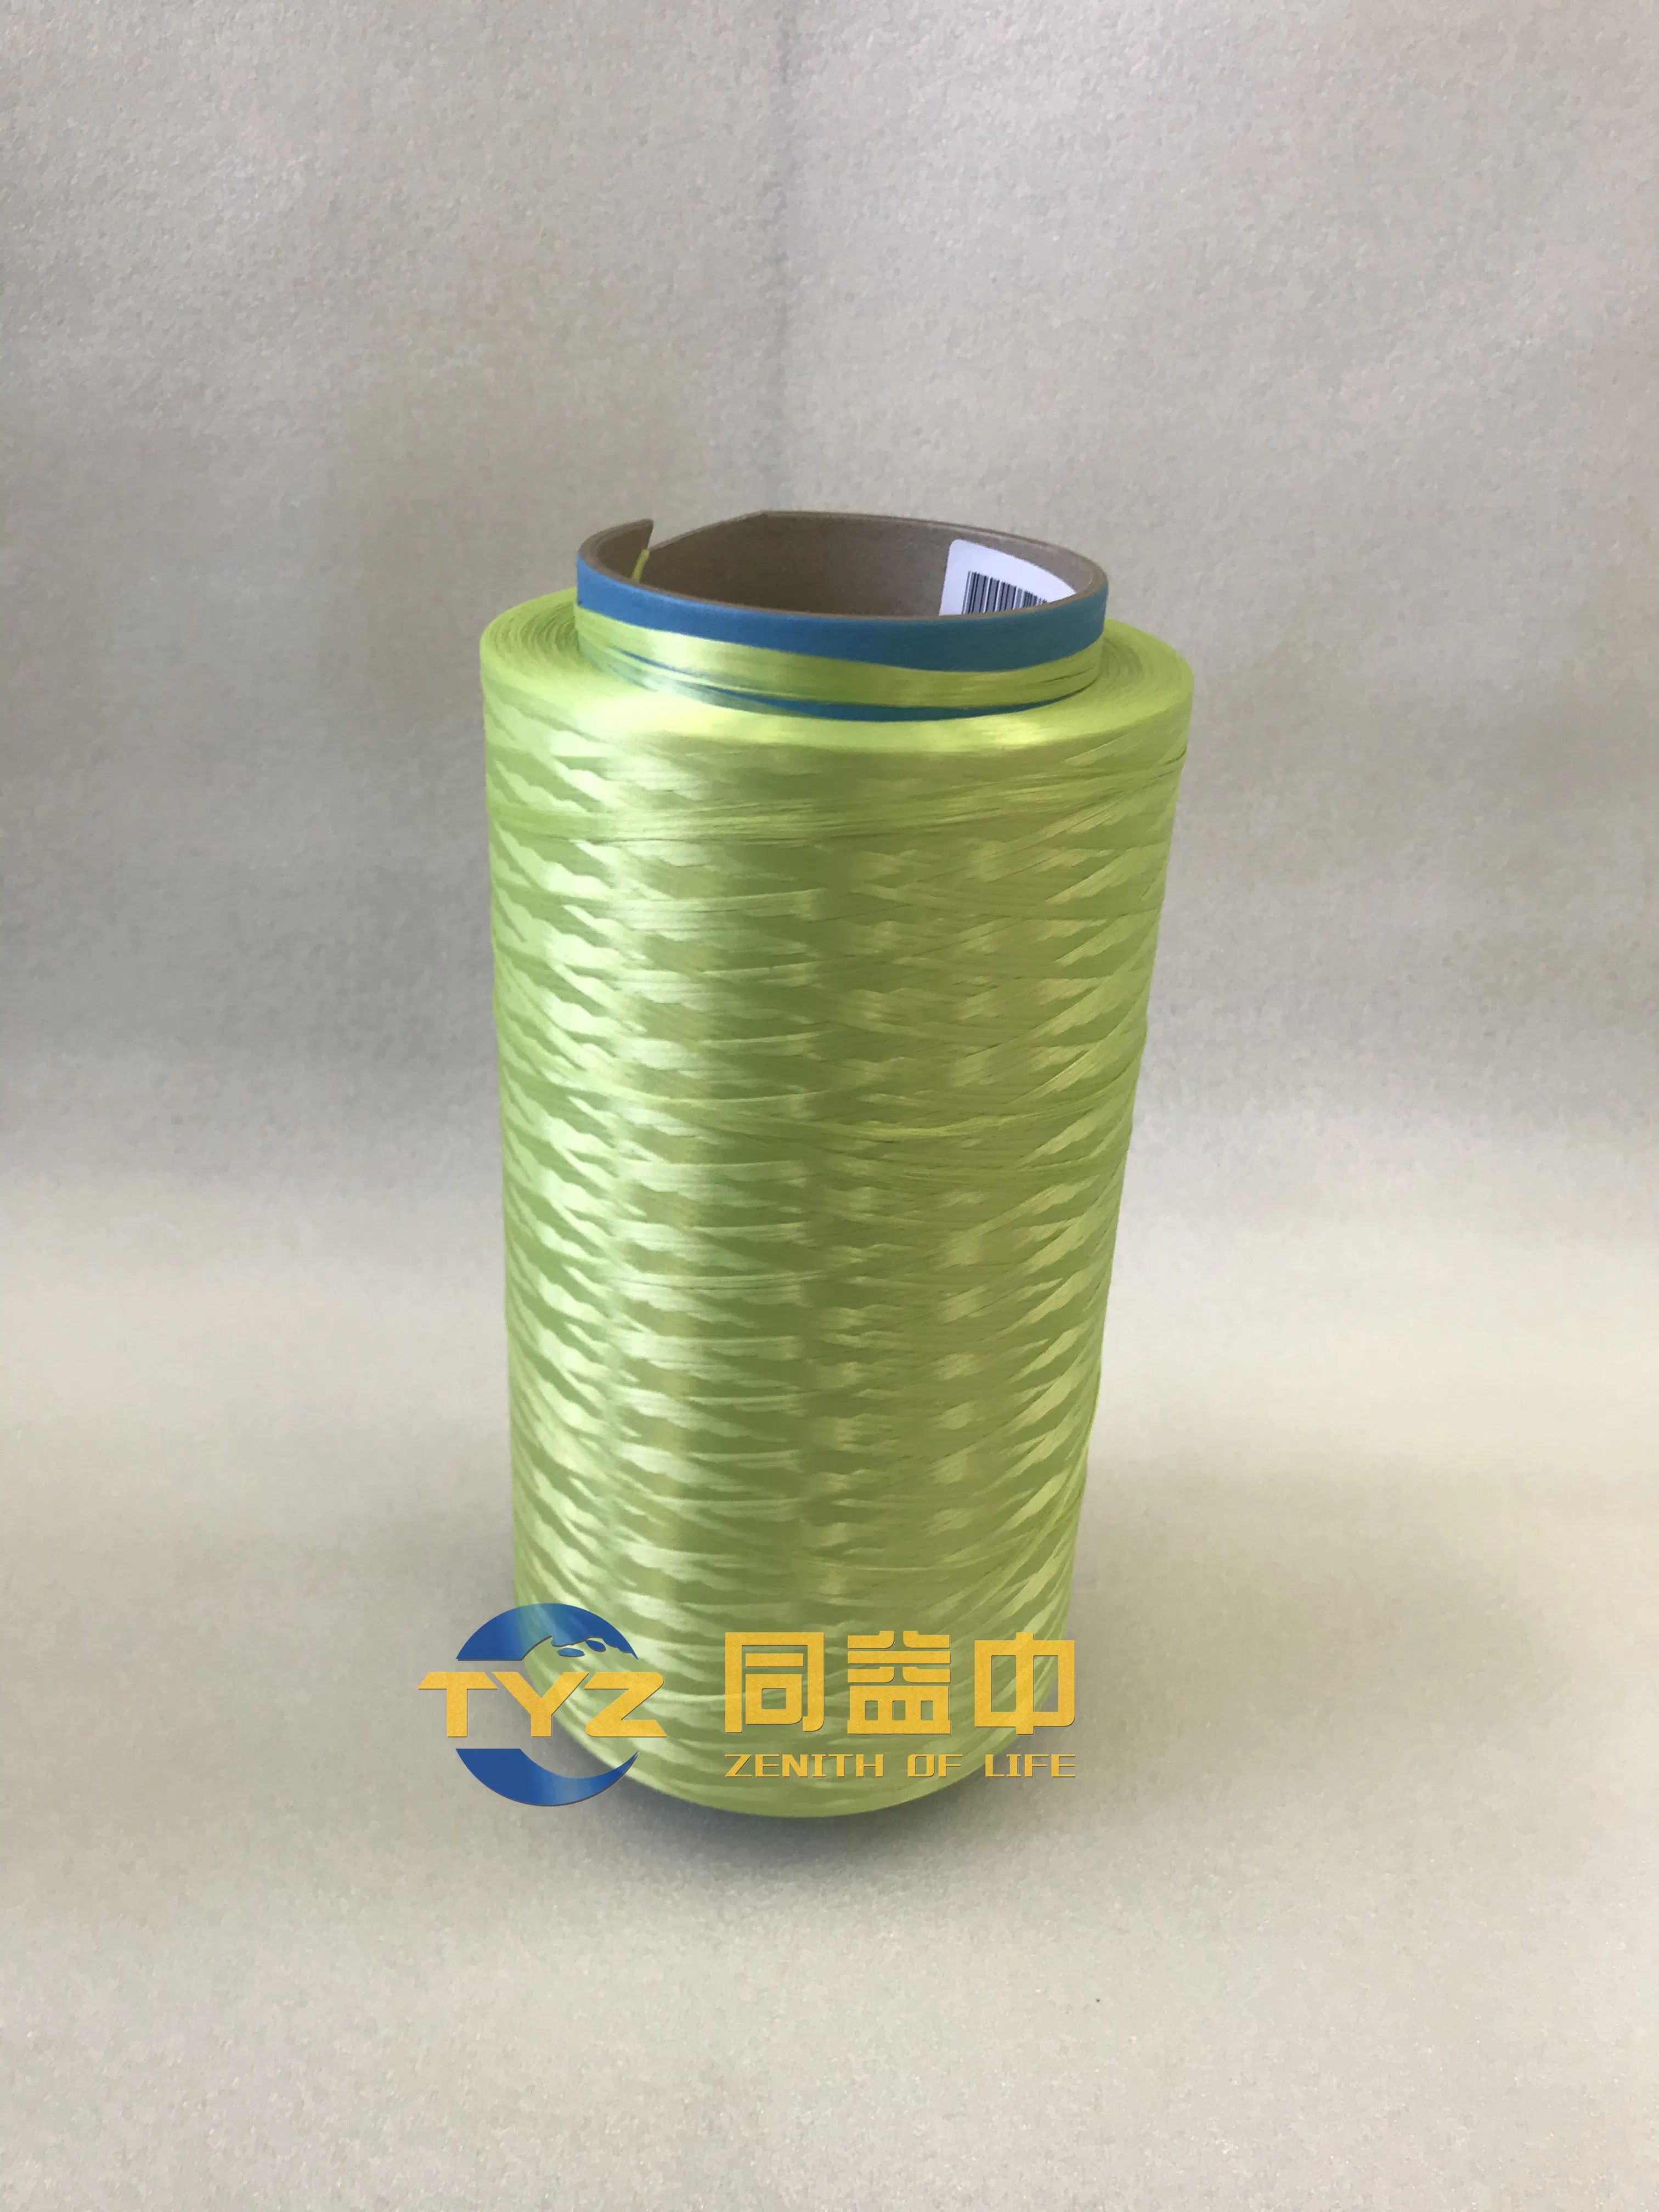 Fibra de alta tenacidade de UHMWPE 1760decitex com a cor verde para cordas de amarração